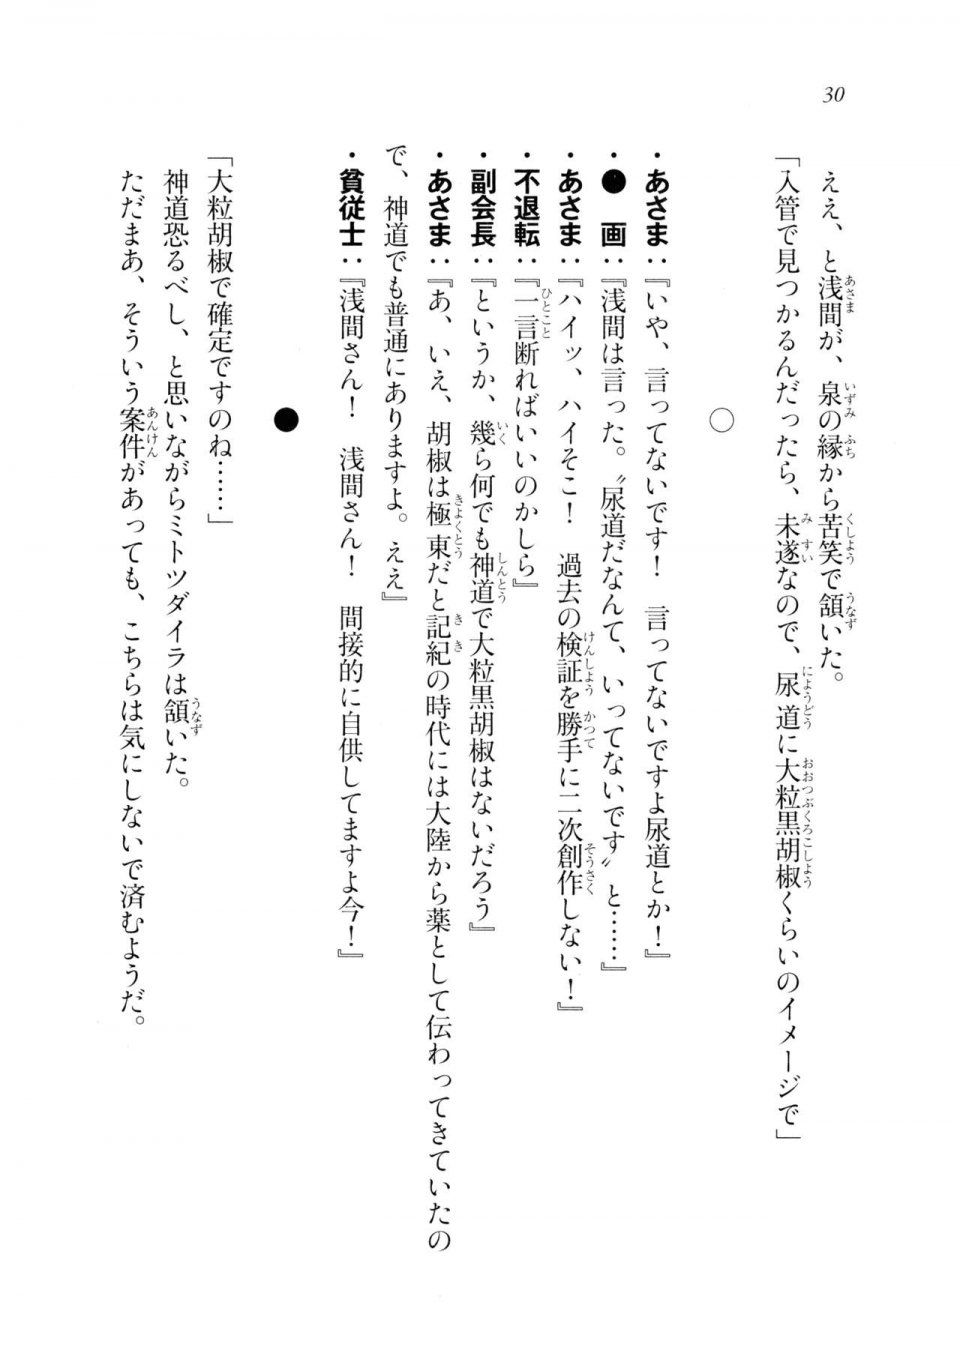 Kyoukai Senjou no Horizon LN Sidestory Vol 2 - Photo #28